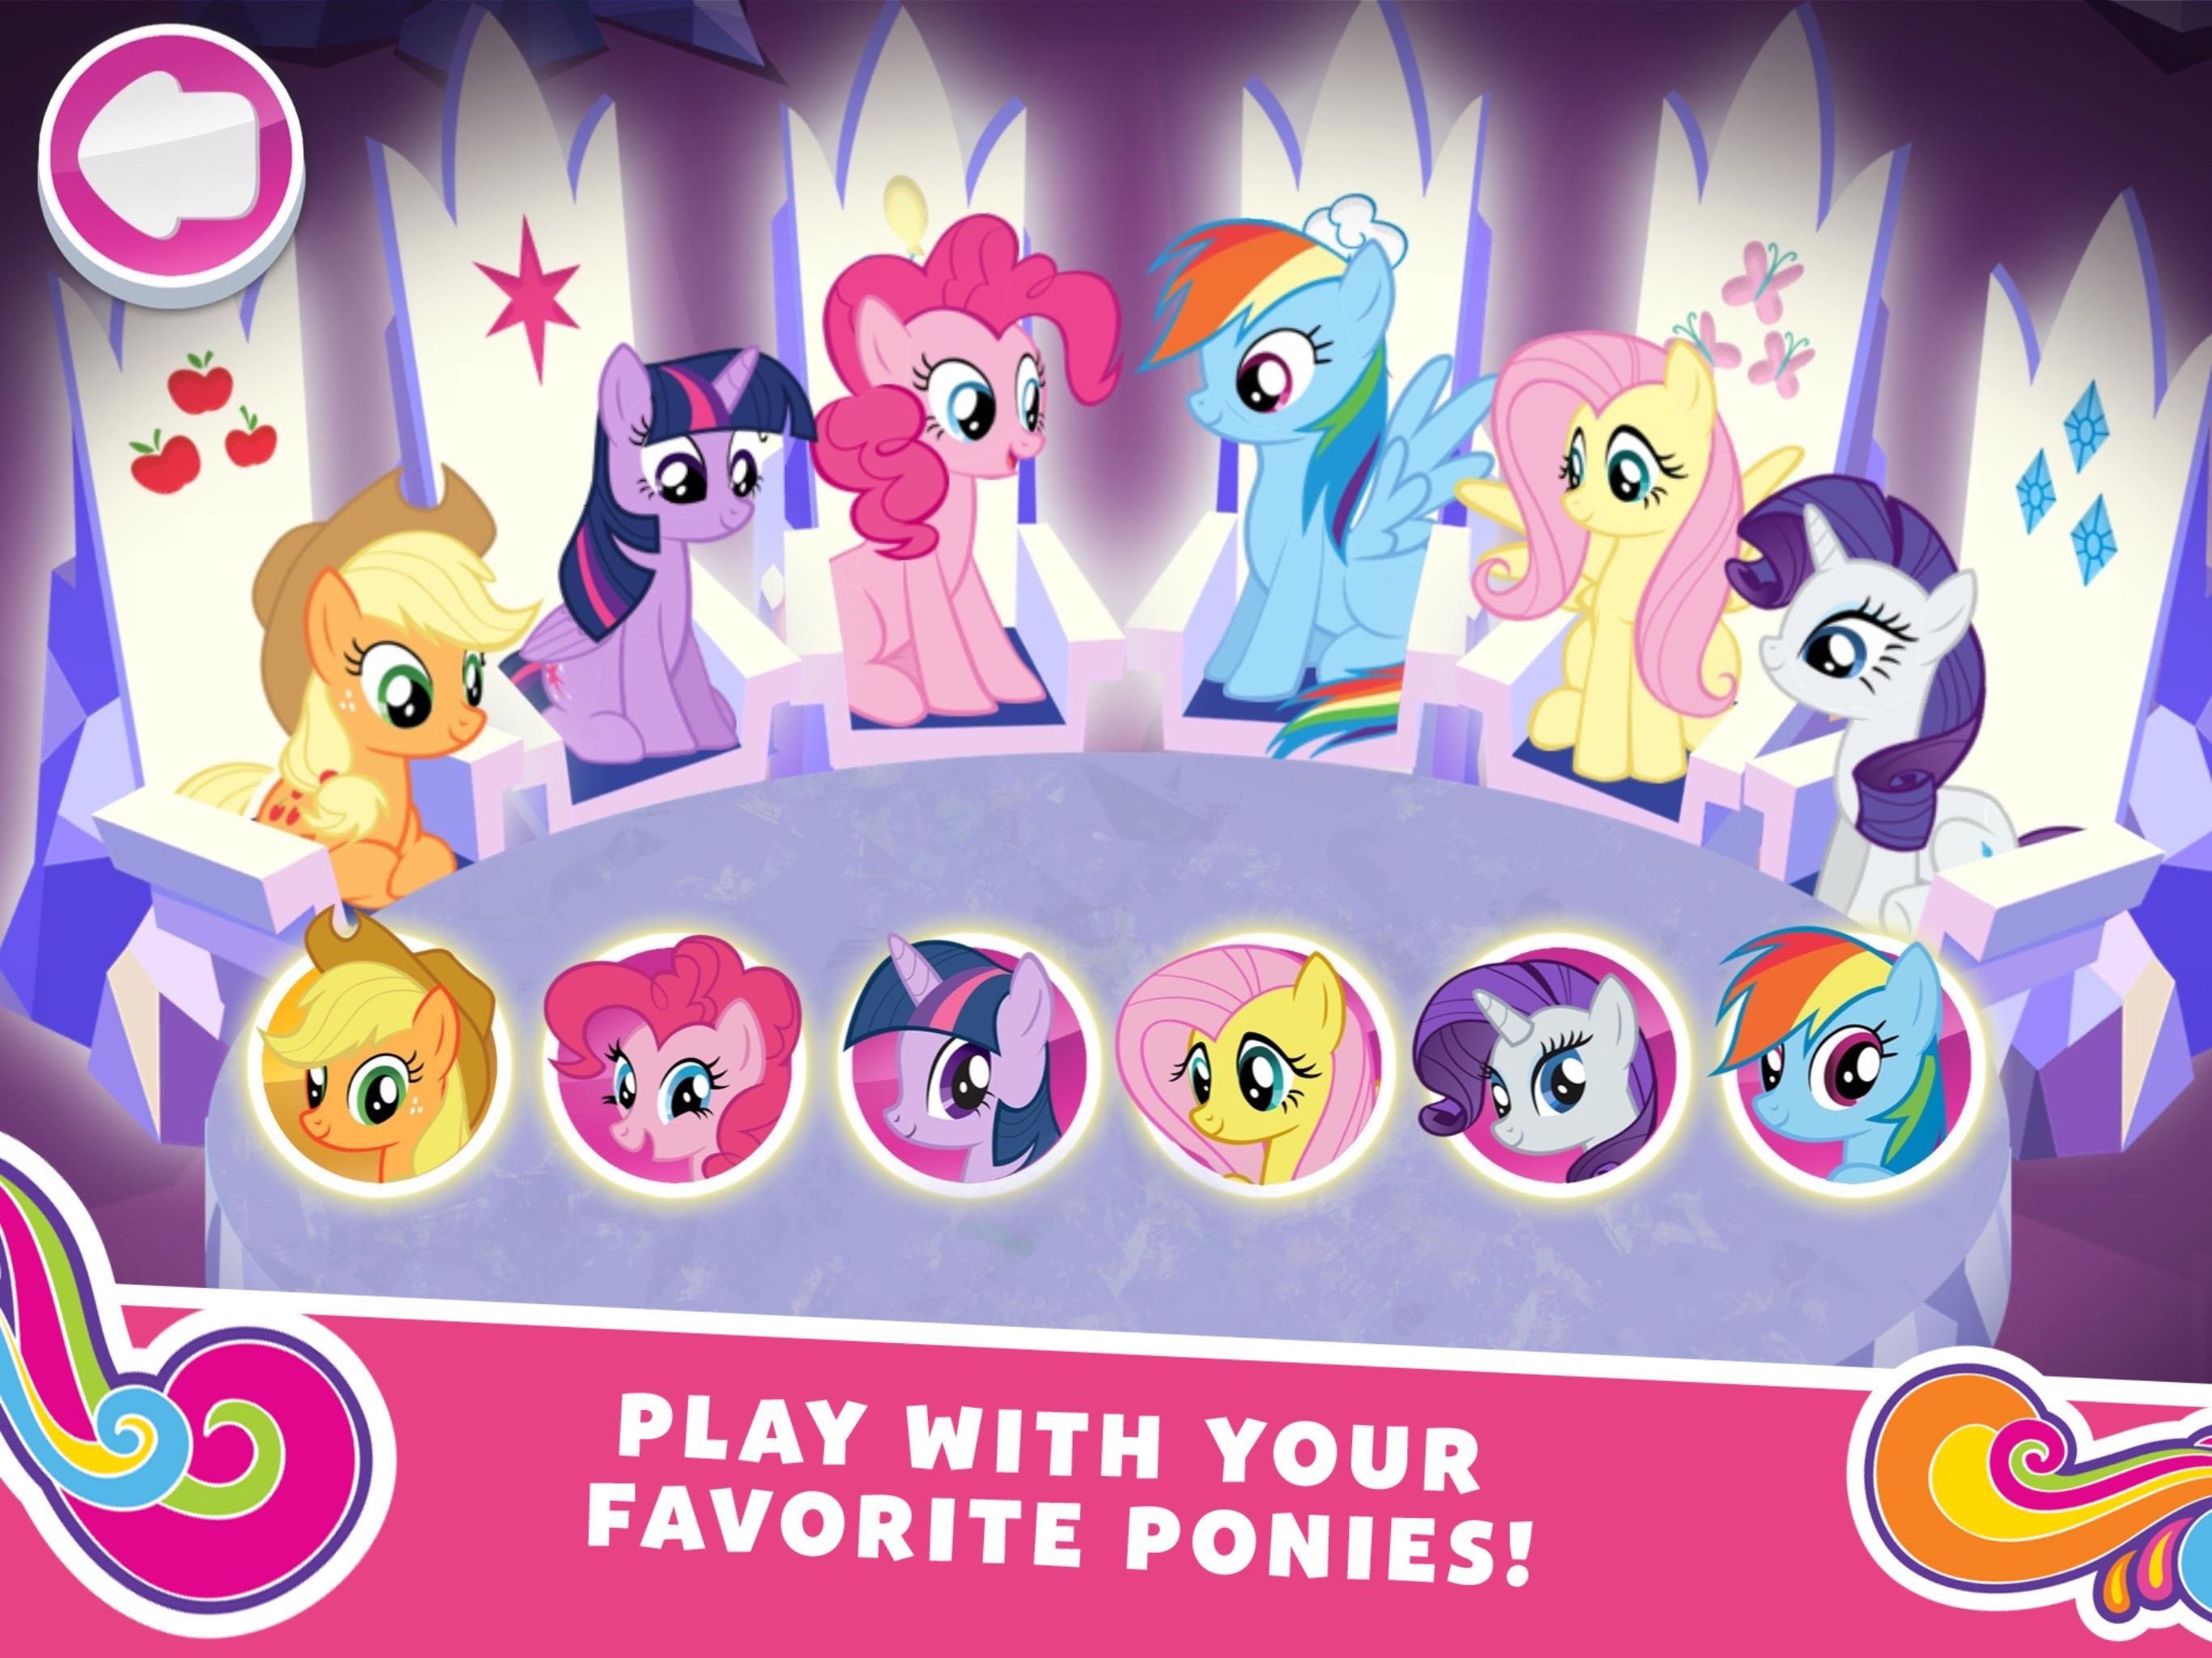 Pony quest. My little Pony миссия гармонии. Игра my little Pony миссия гармонии. Андроид my little Pony: Harmony Quest. Игры пони Гармония.